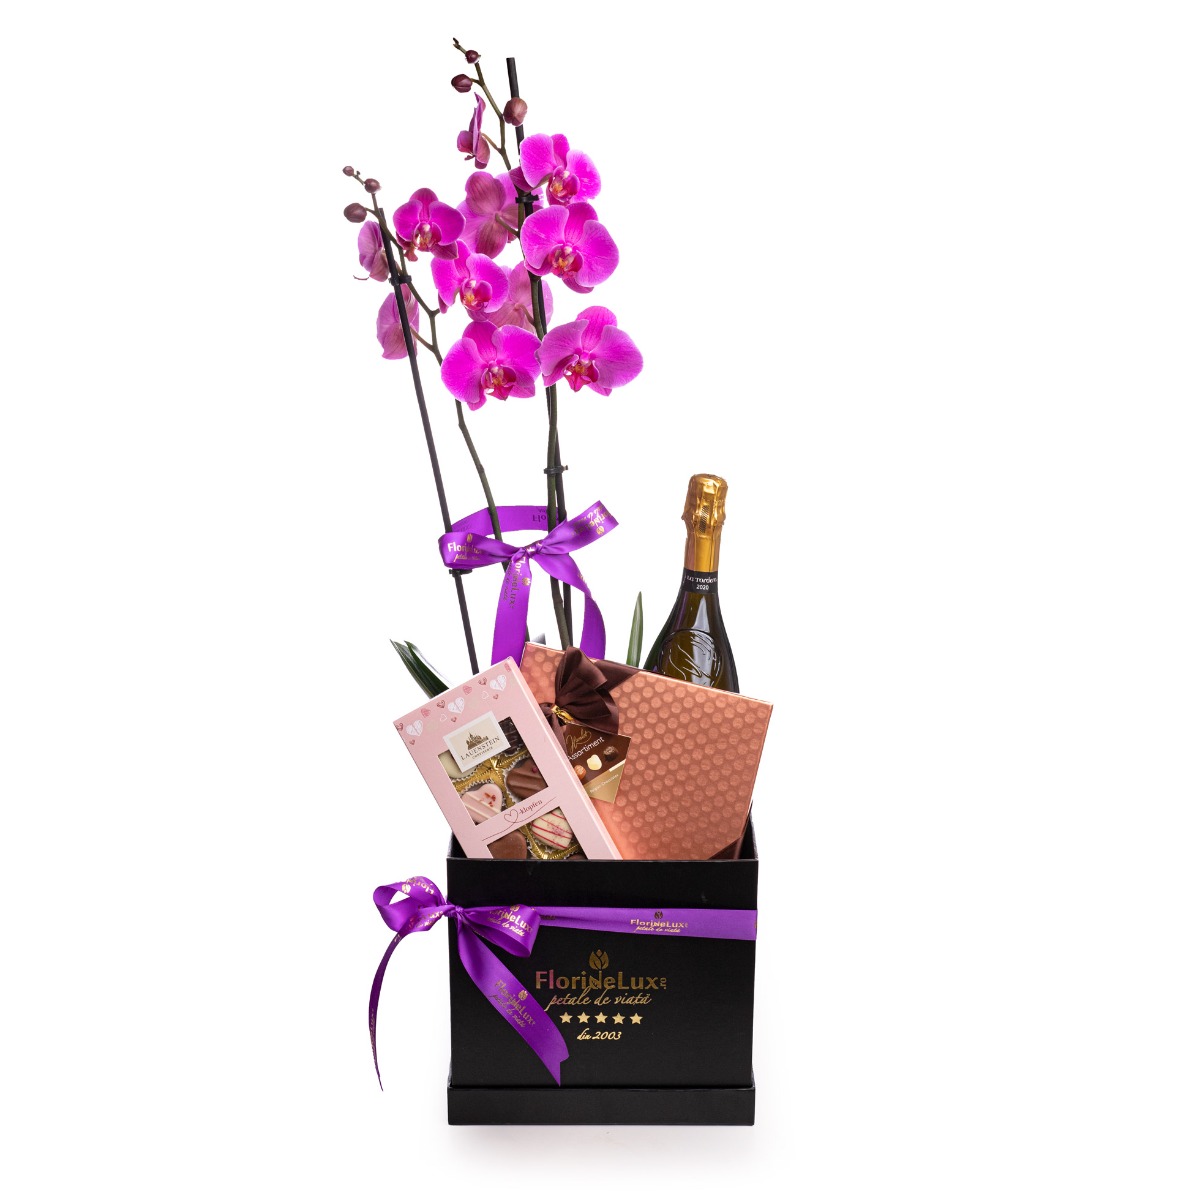 Cadouri pentru femei: flori, ciocolata, bautura